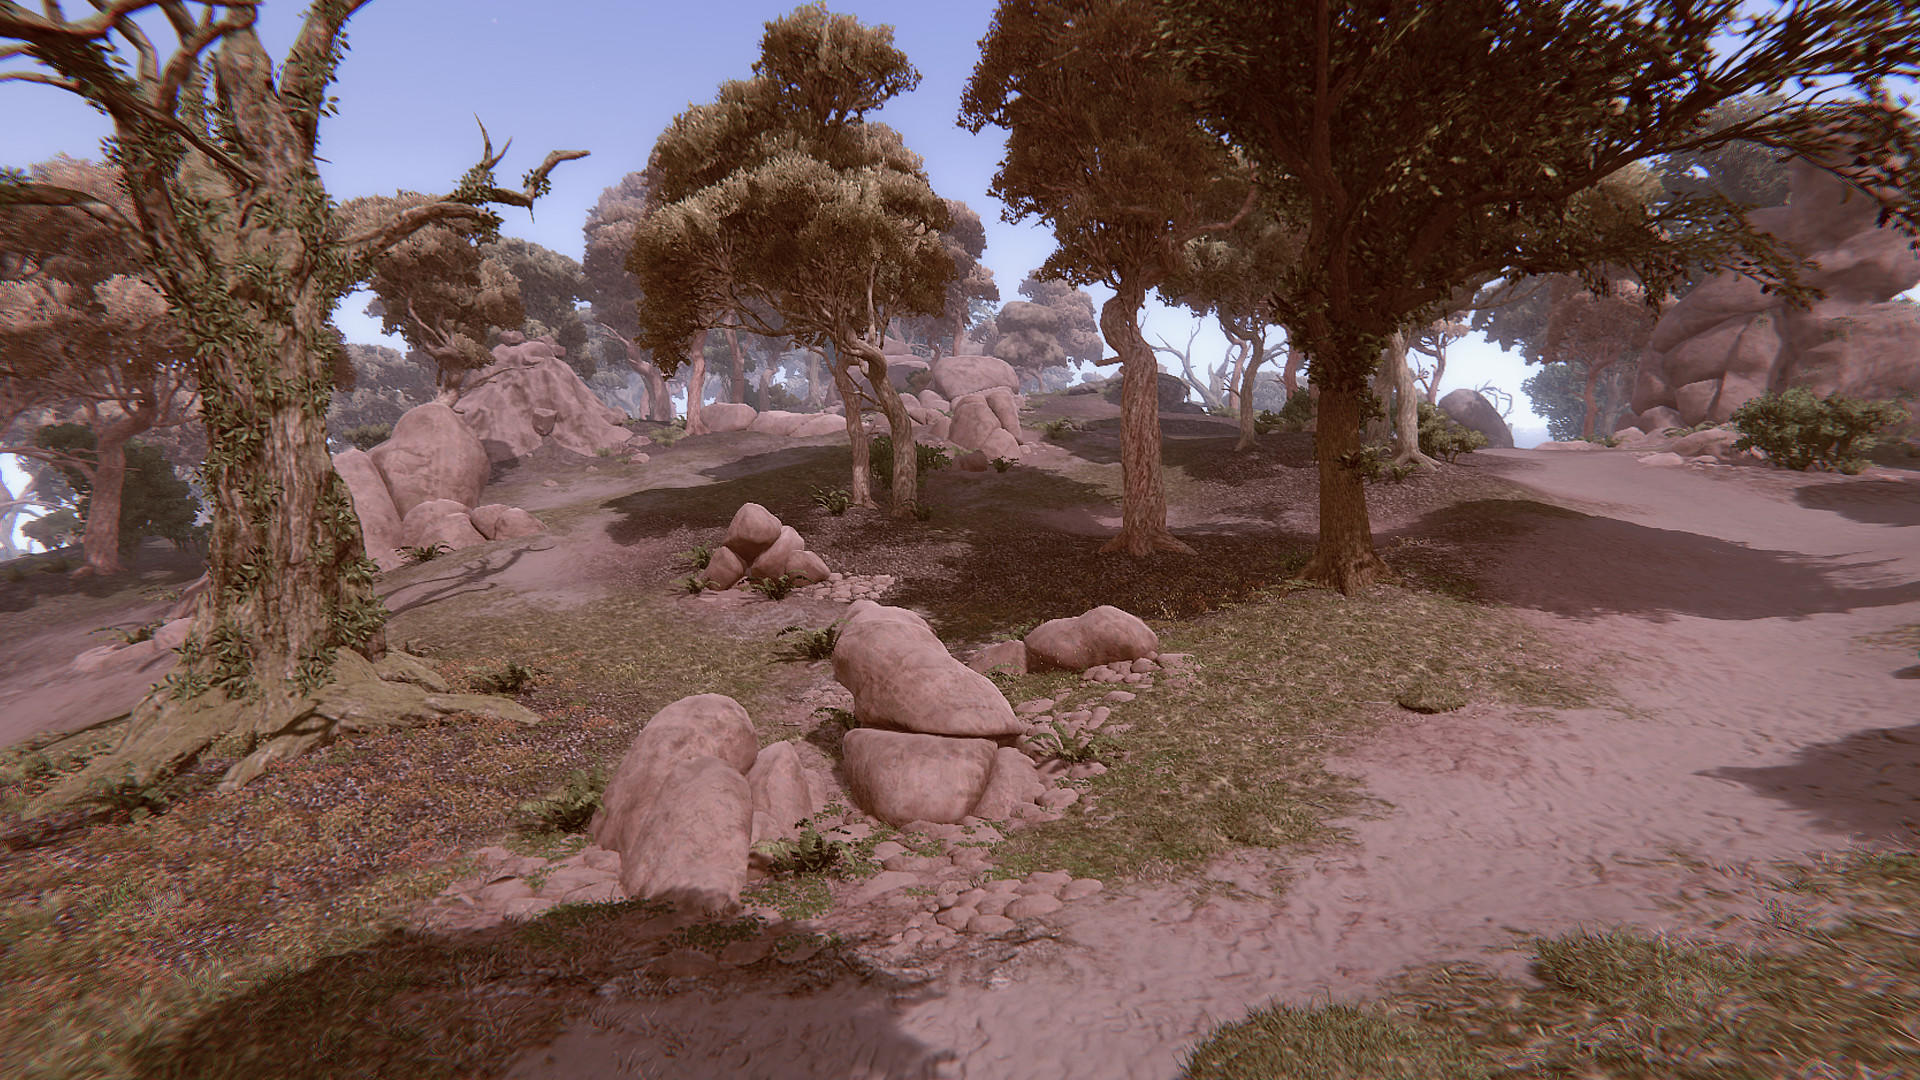 Remote Knights Online screenshot game